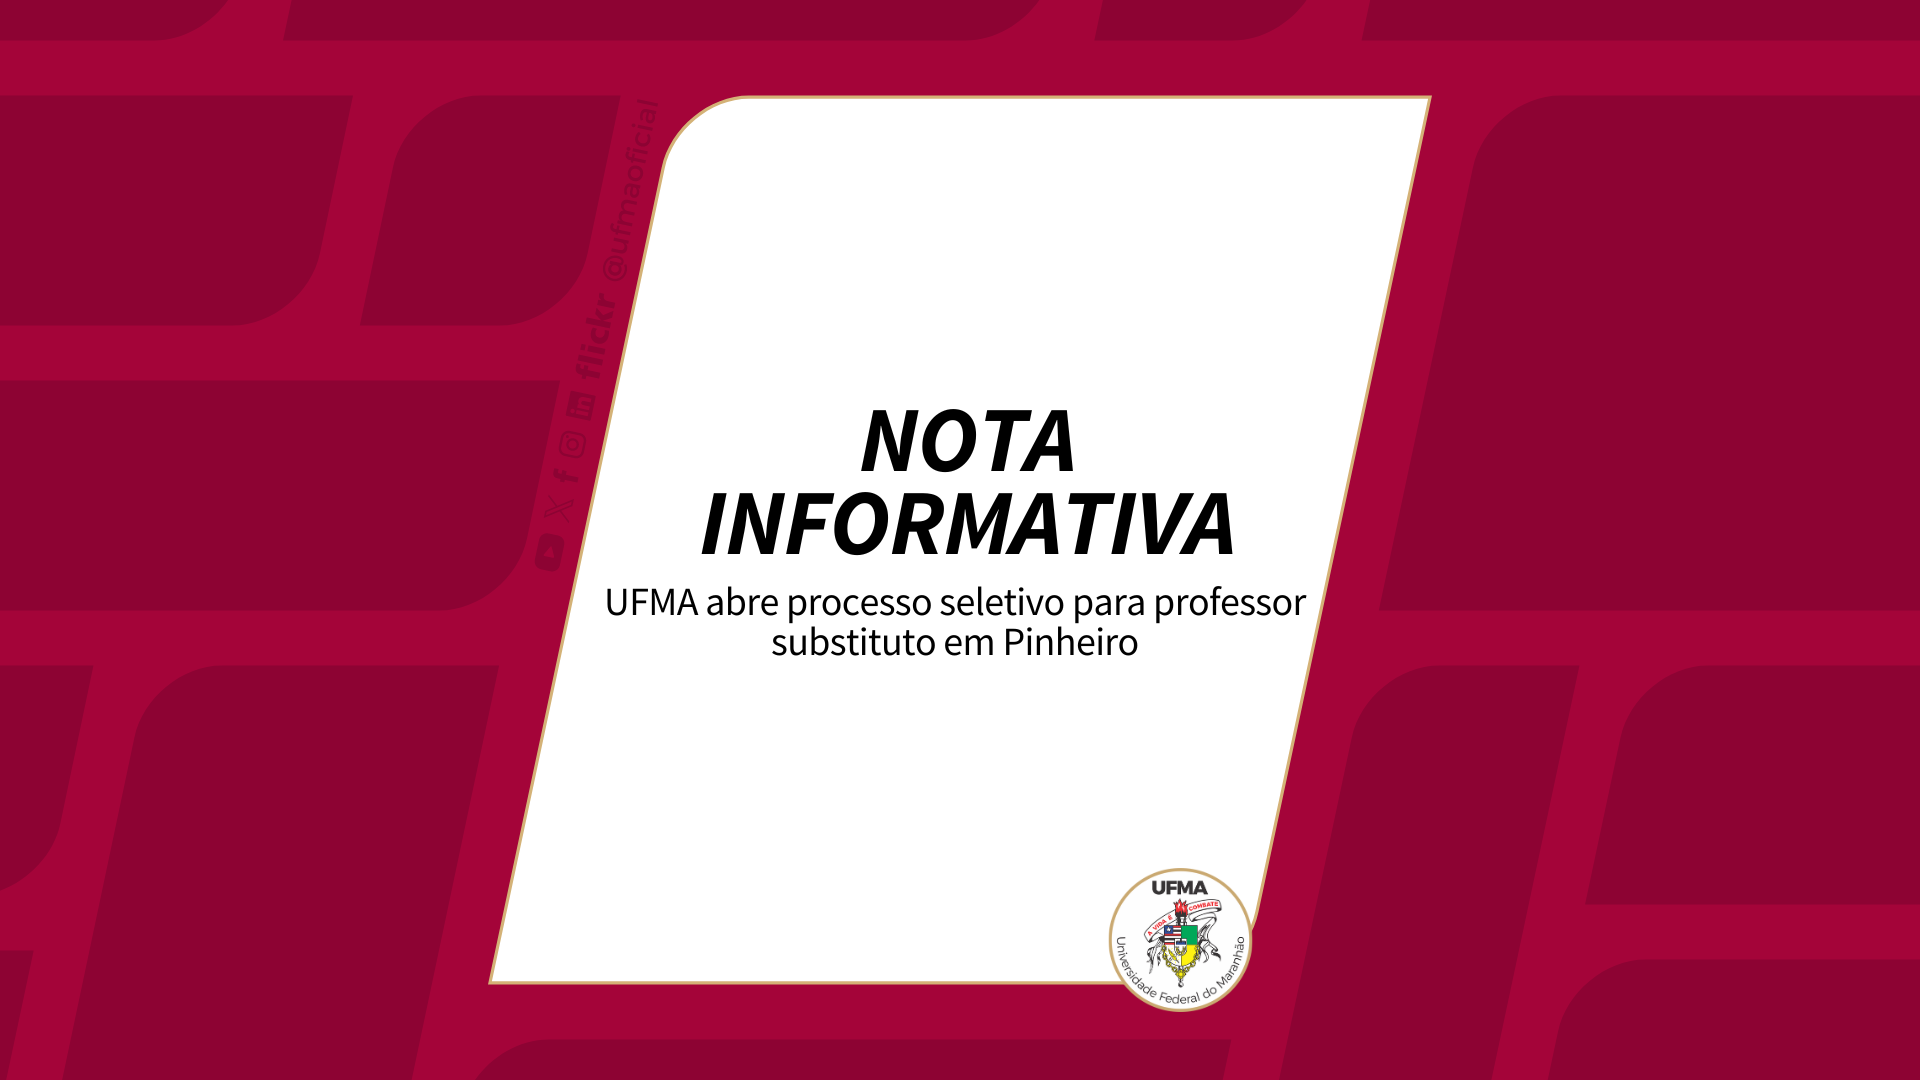 UFMA abre processo seletivo para professor substituto em Pinheiro